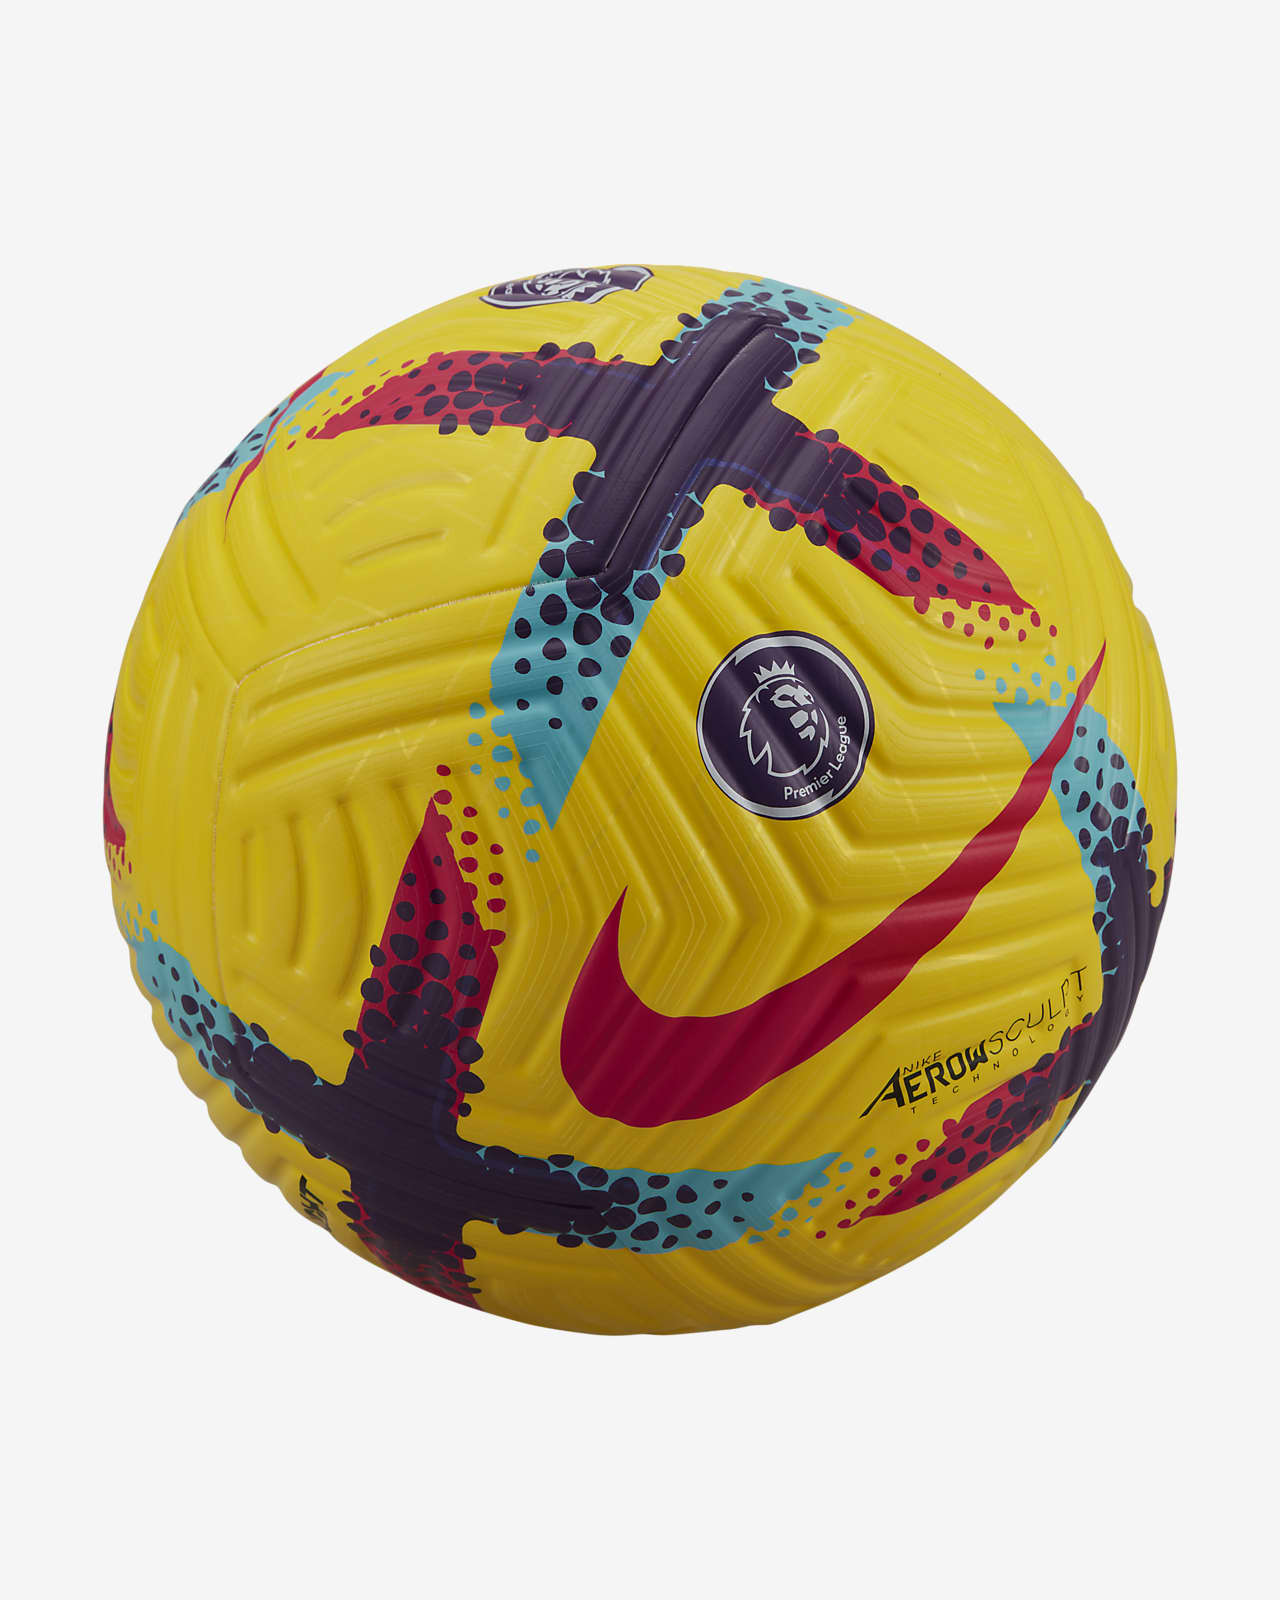 Premier Flight Soccer Ball. Nike.com